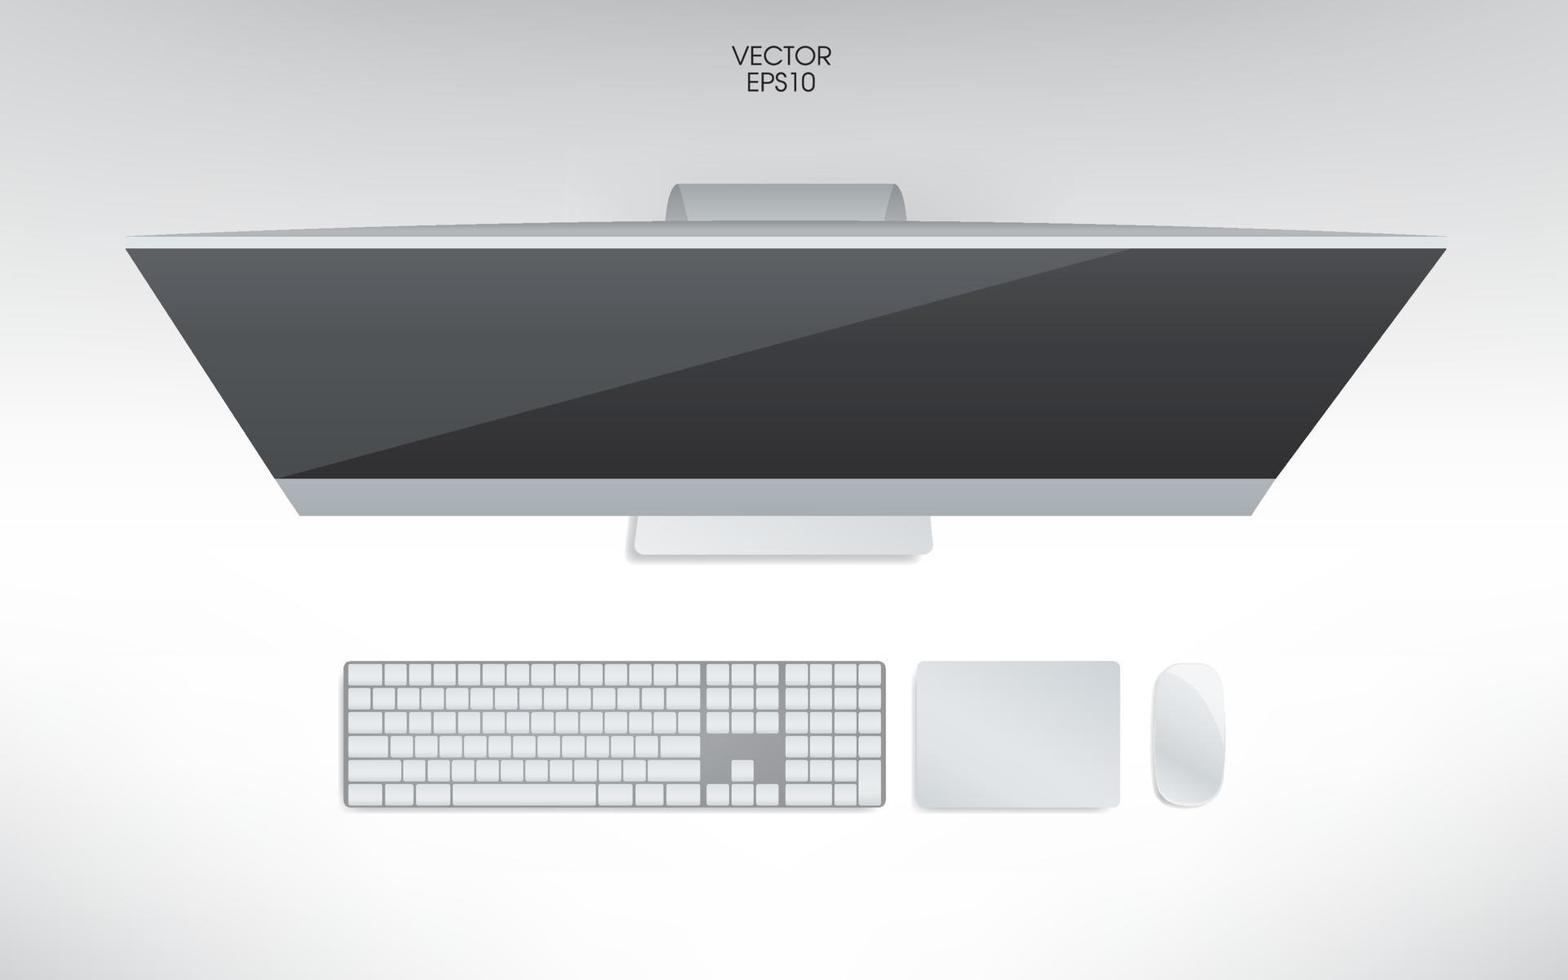 vue de dessus de l'ordinateur, du clavier, de la souris et du pavé tactile. vecteur. vecteur